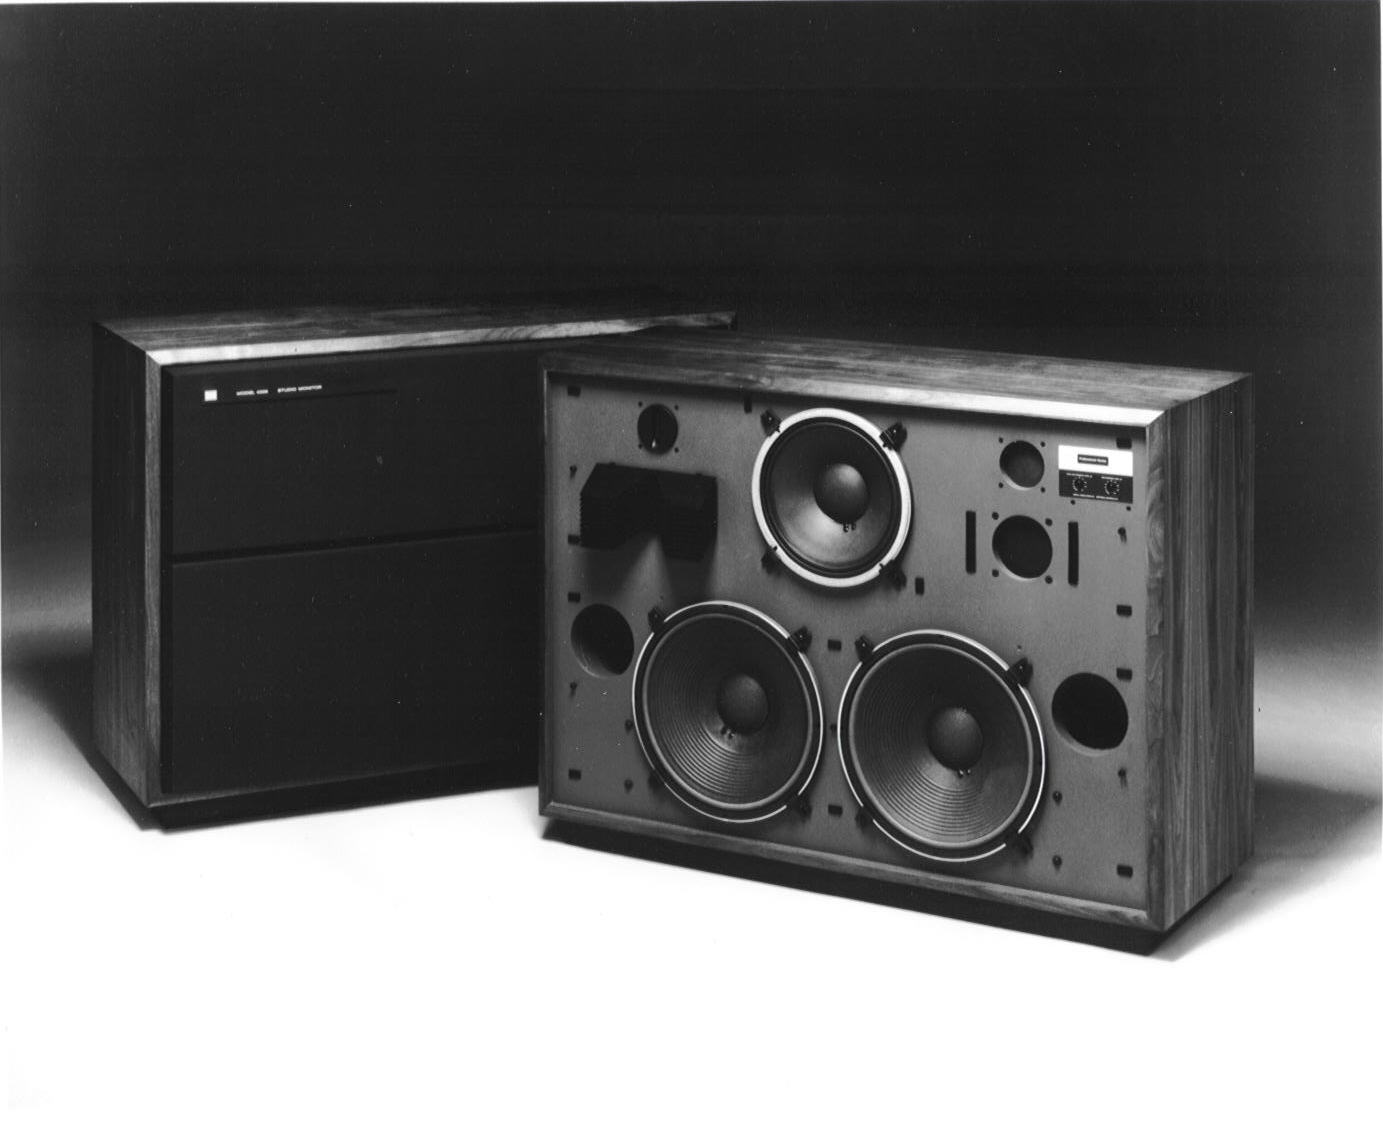 Vintage jbl speakers models